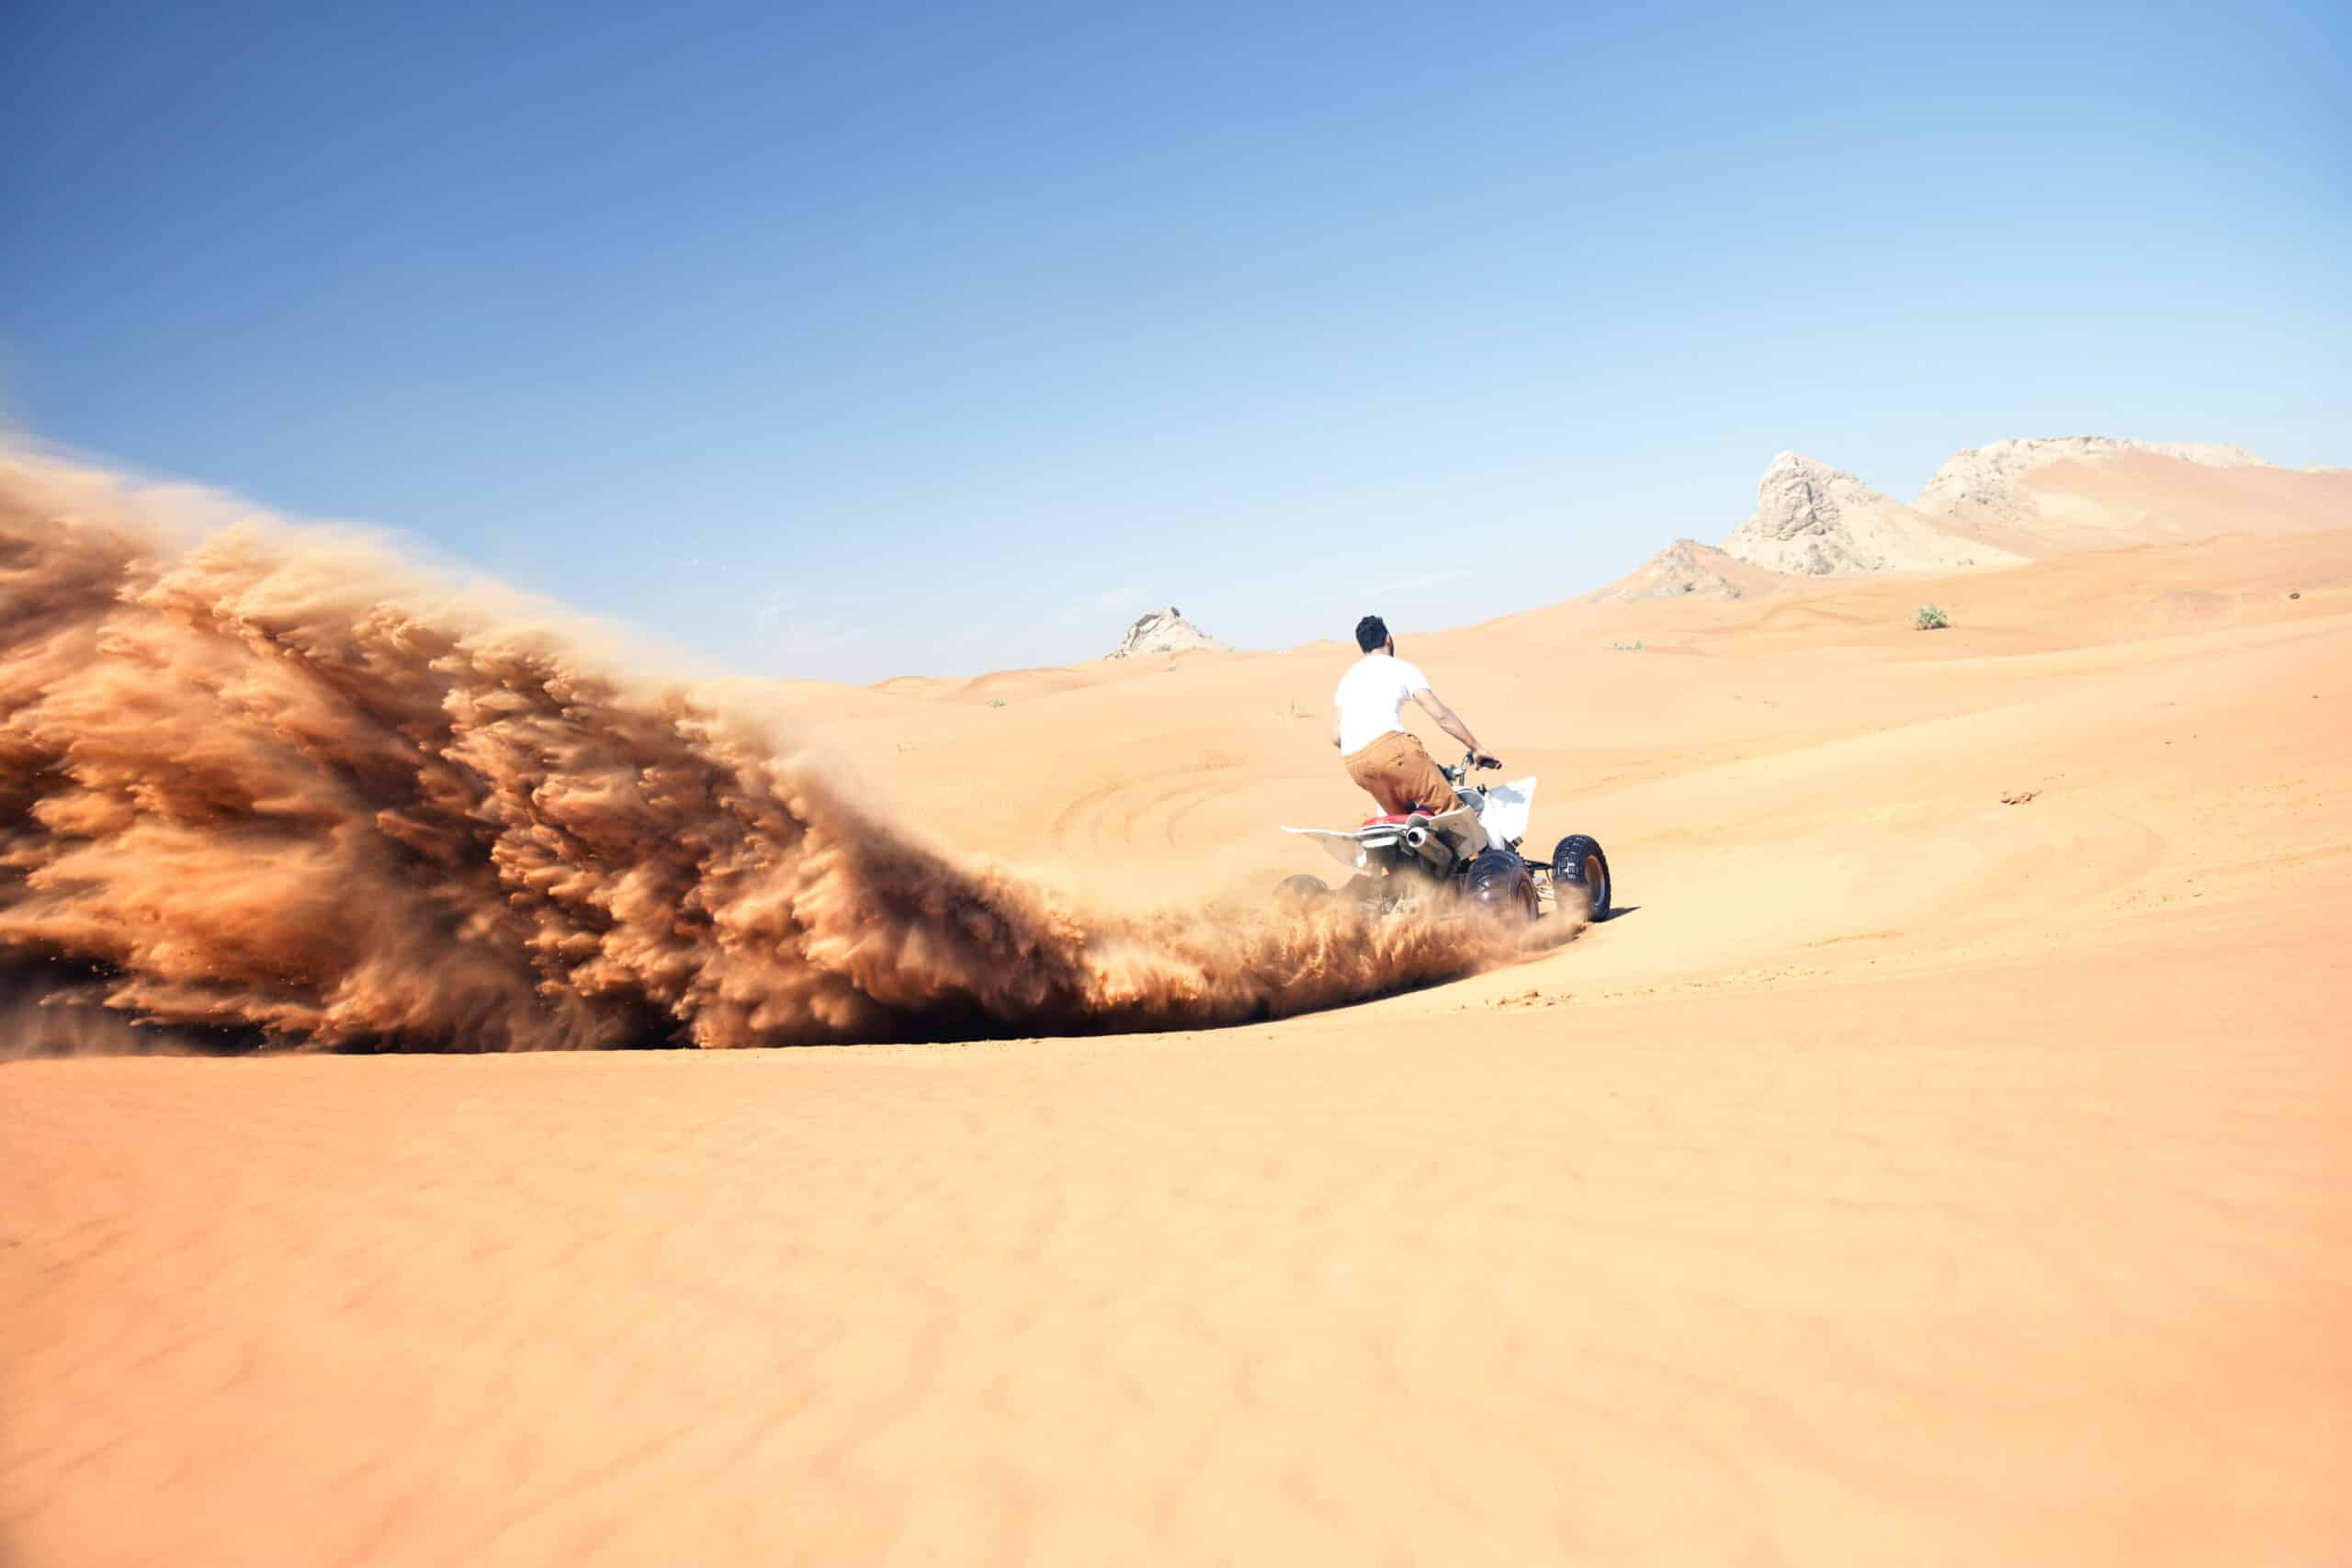 Eine Person fährt mit hoher Geschwindigkeit auf einem Motorrad durch eine Sandwüste und wirbelt dabei eine große Sandspur auf. Im Hintergrund sind unter einem klaren blauen Himmel Berge zu sehen. © Fotografie Tomas Rodriguez